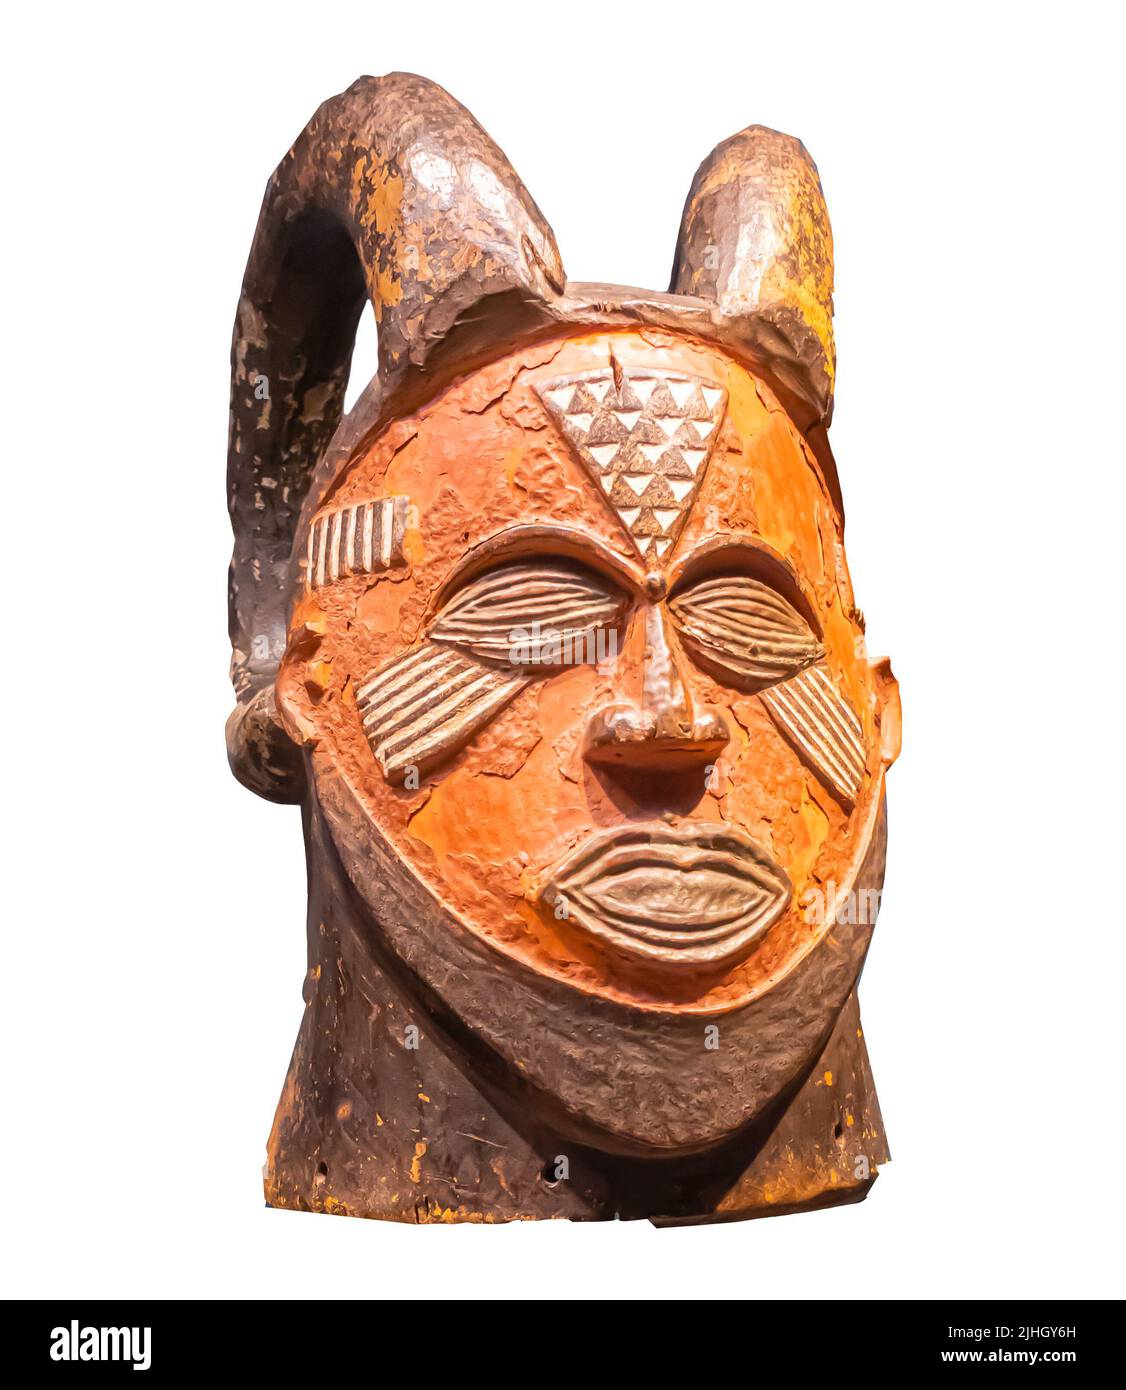 Kopfstück - Detail einer afrikanischen Maske - Kuba ( Kete ), Anfang des 20.. Jahrhunderts - Holz, Pigmente, Kupfer erlauben, Pflanzenfaser Stockfoto